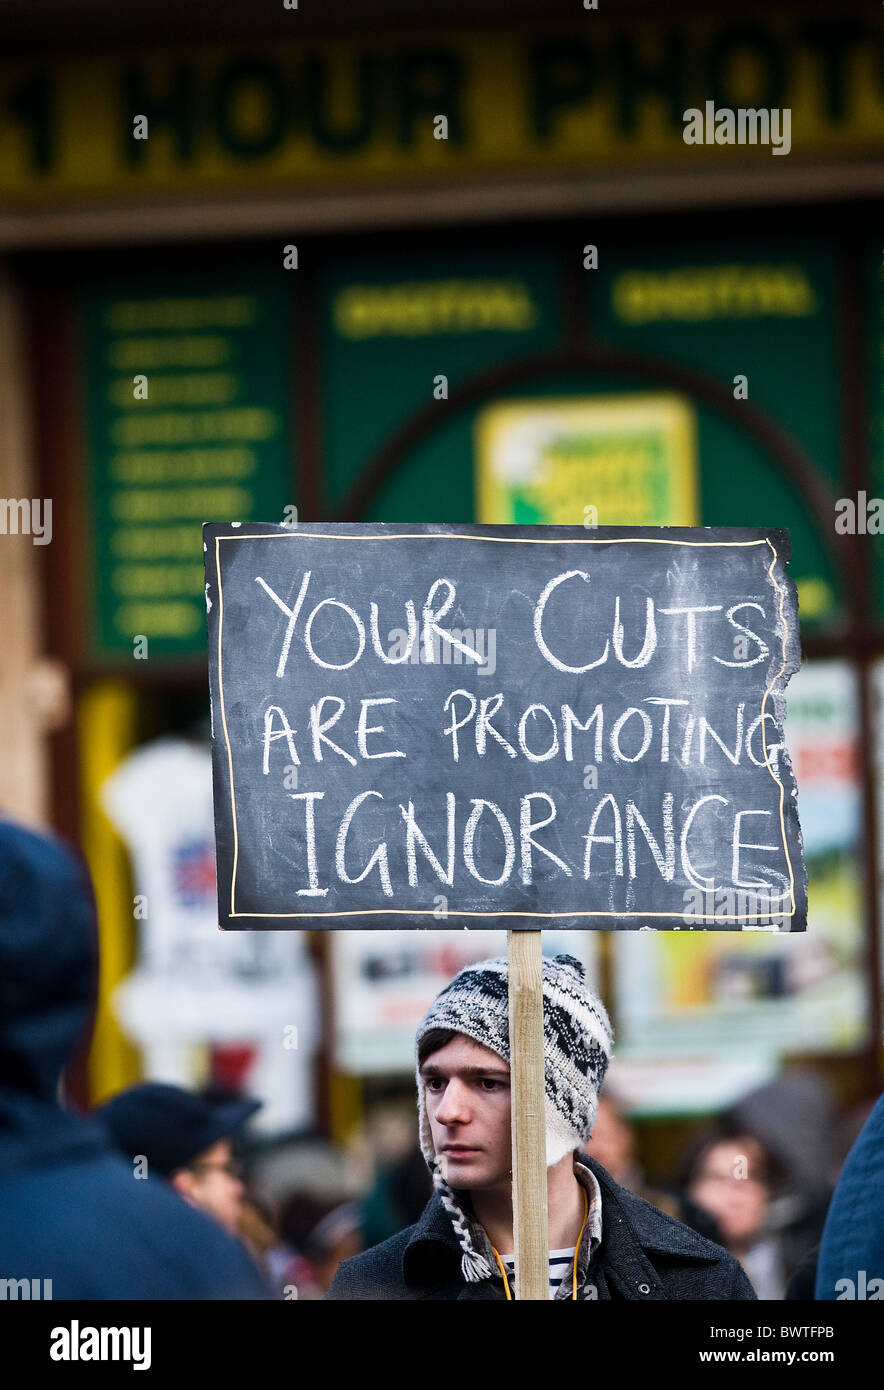 Un étudiant tenant une pancarte lors d'une manifestation contre les frais universitaires. Banque D'Images